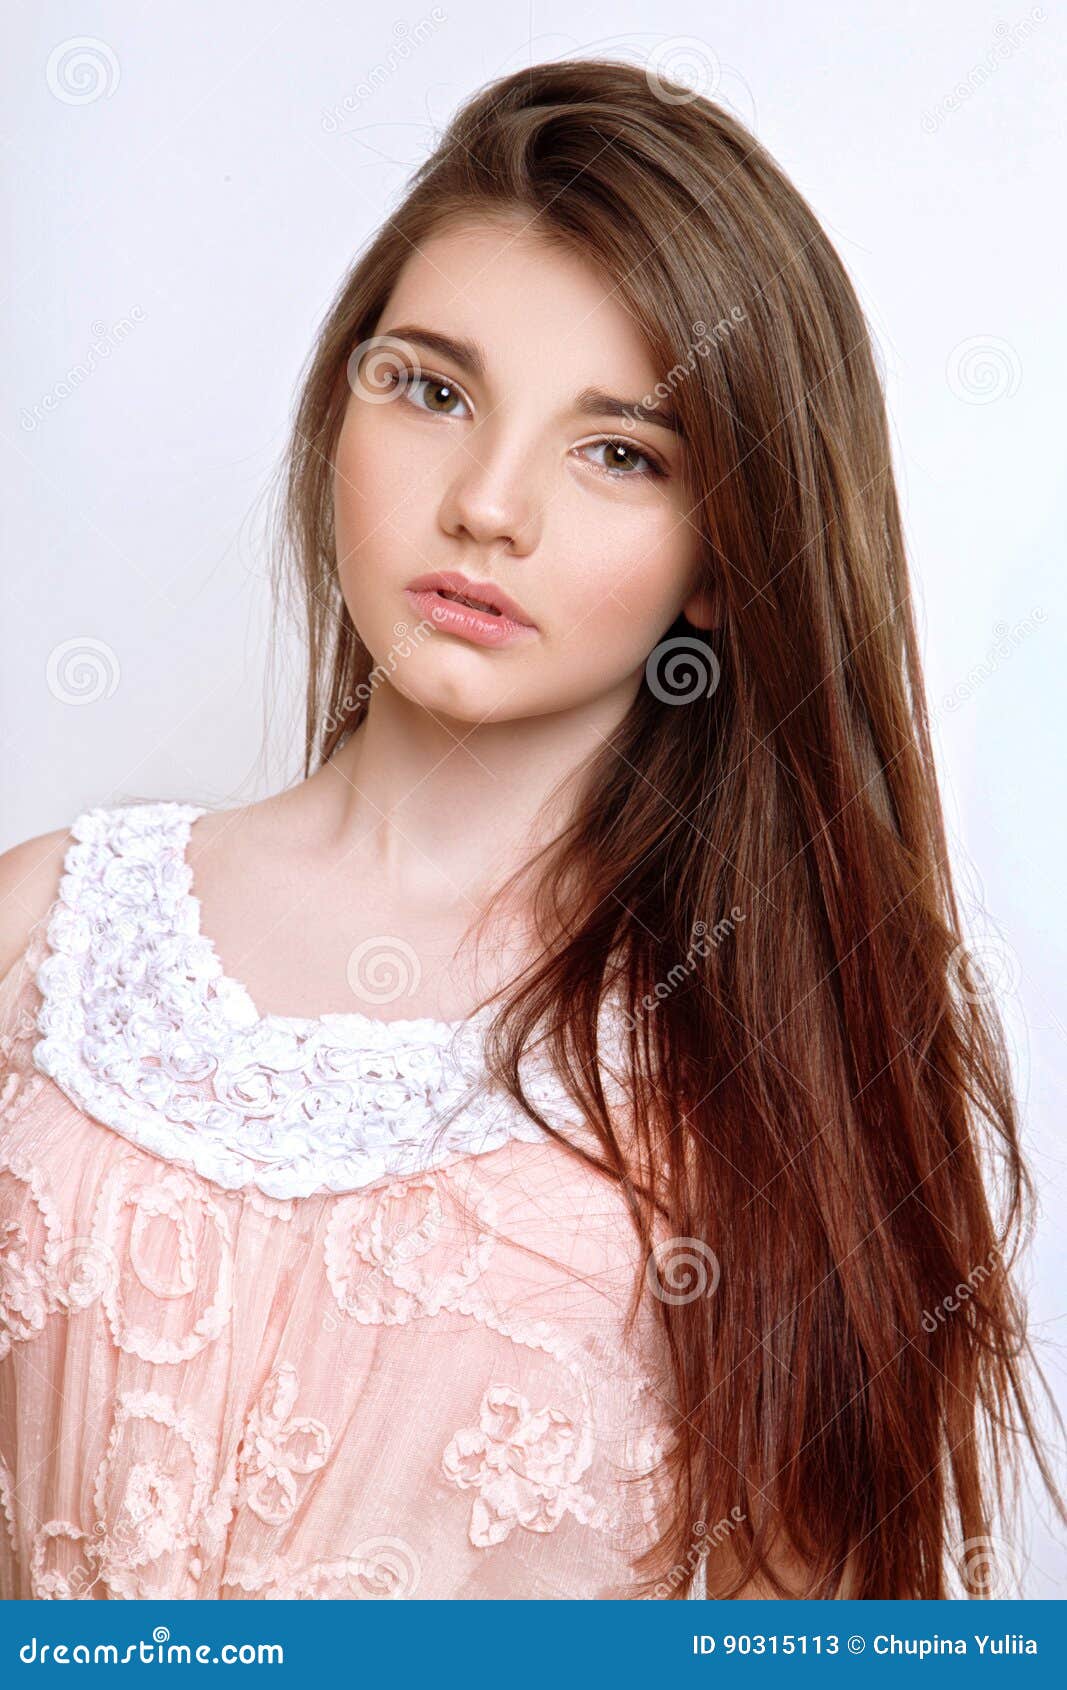 Une Belle Fille Agee De 13 Ans Image Stock Image Du Fille Agee